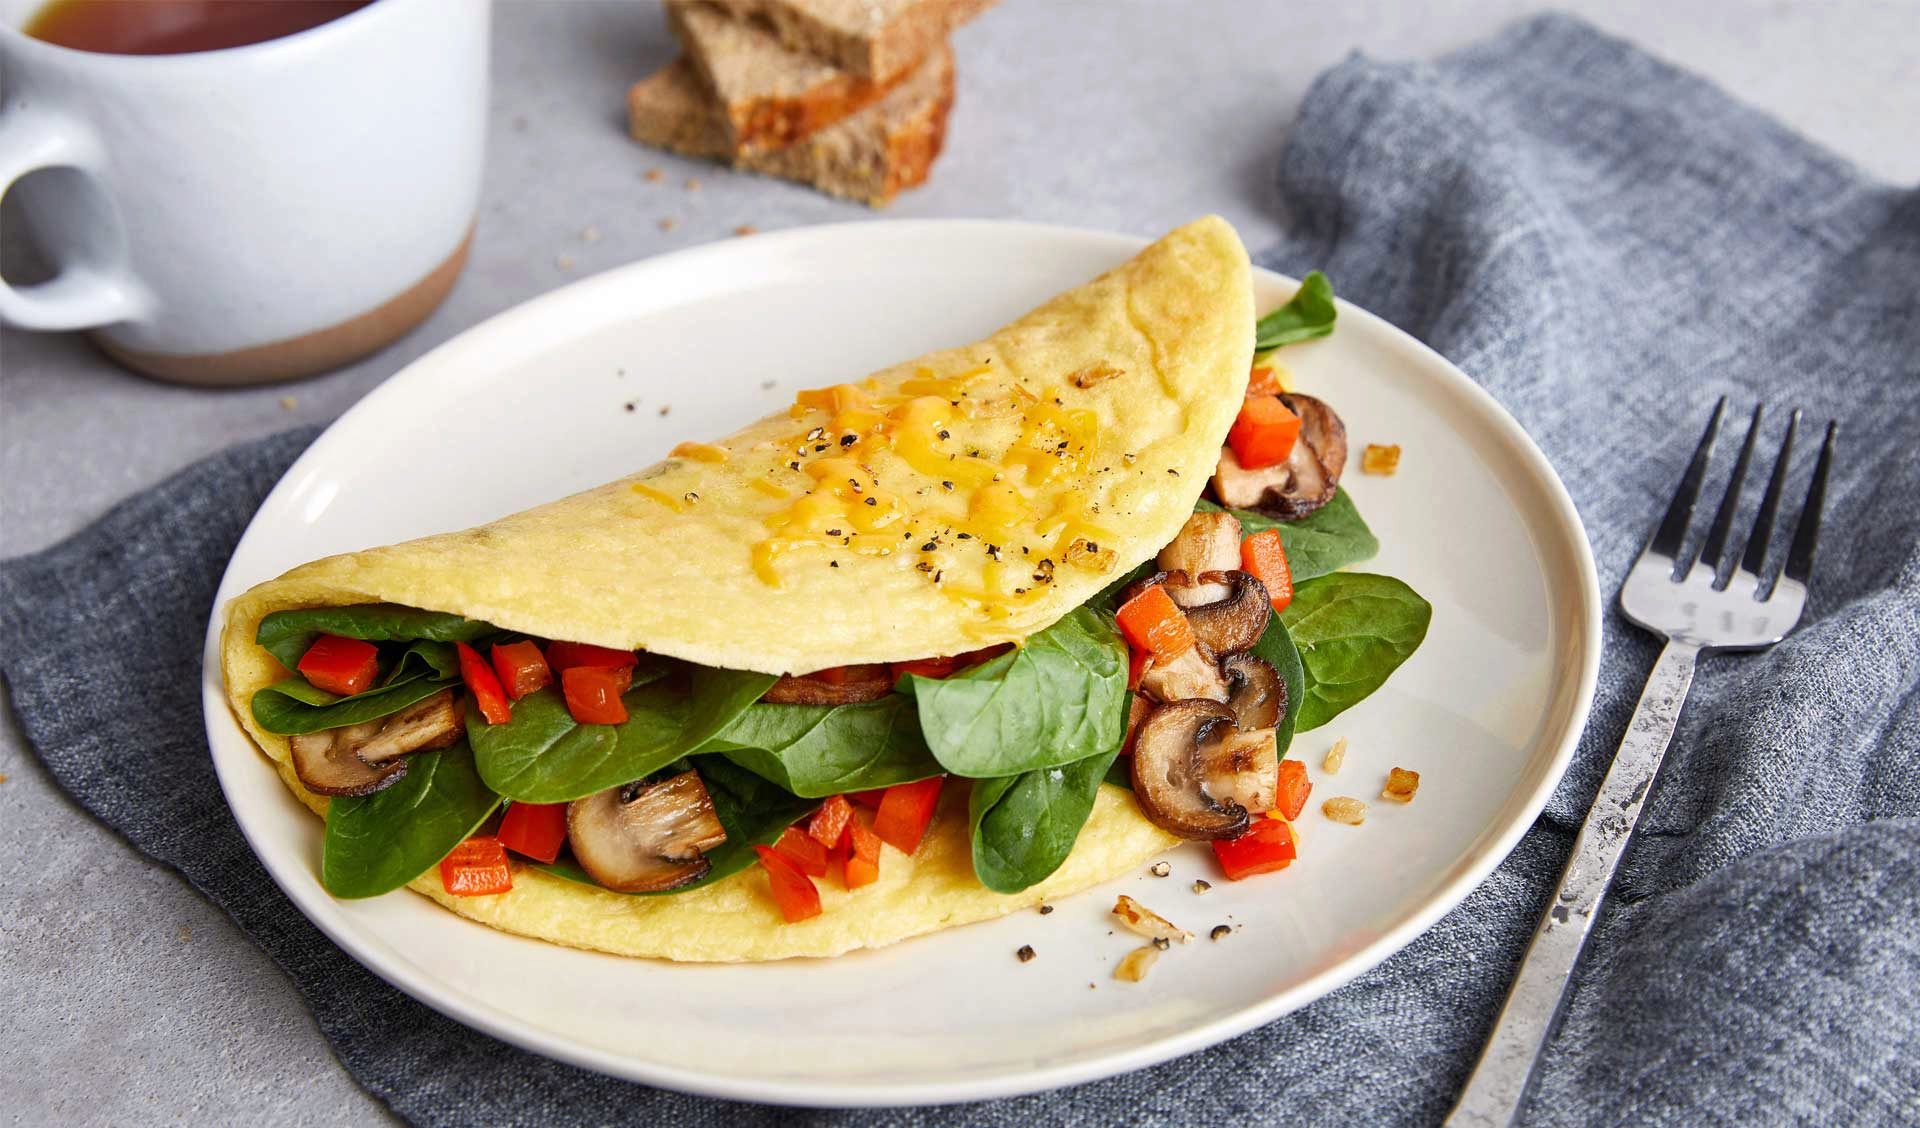 Vegan omelette con vegetales + pancakes (vegan)